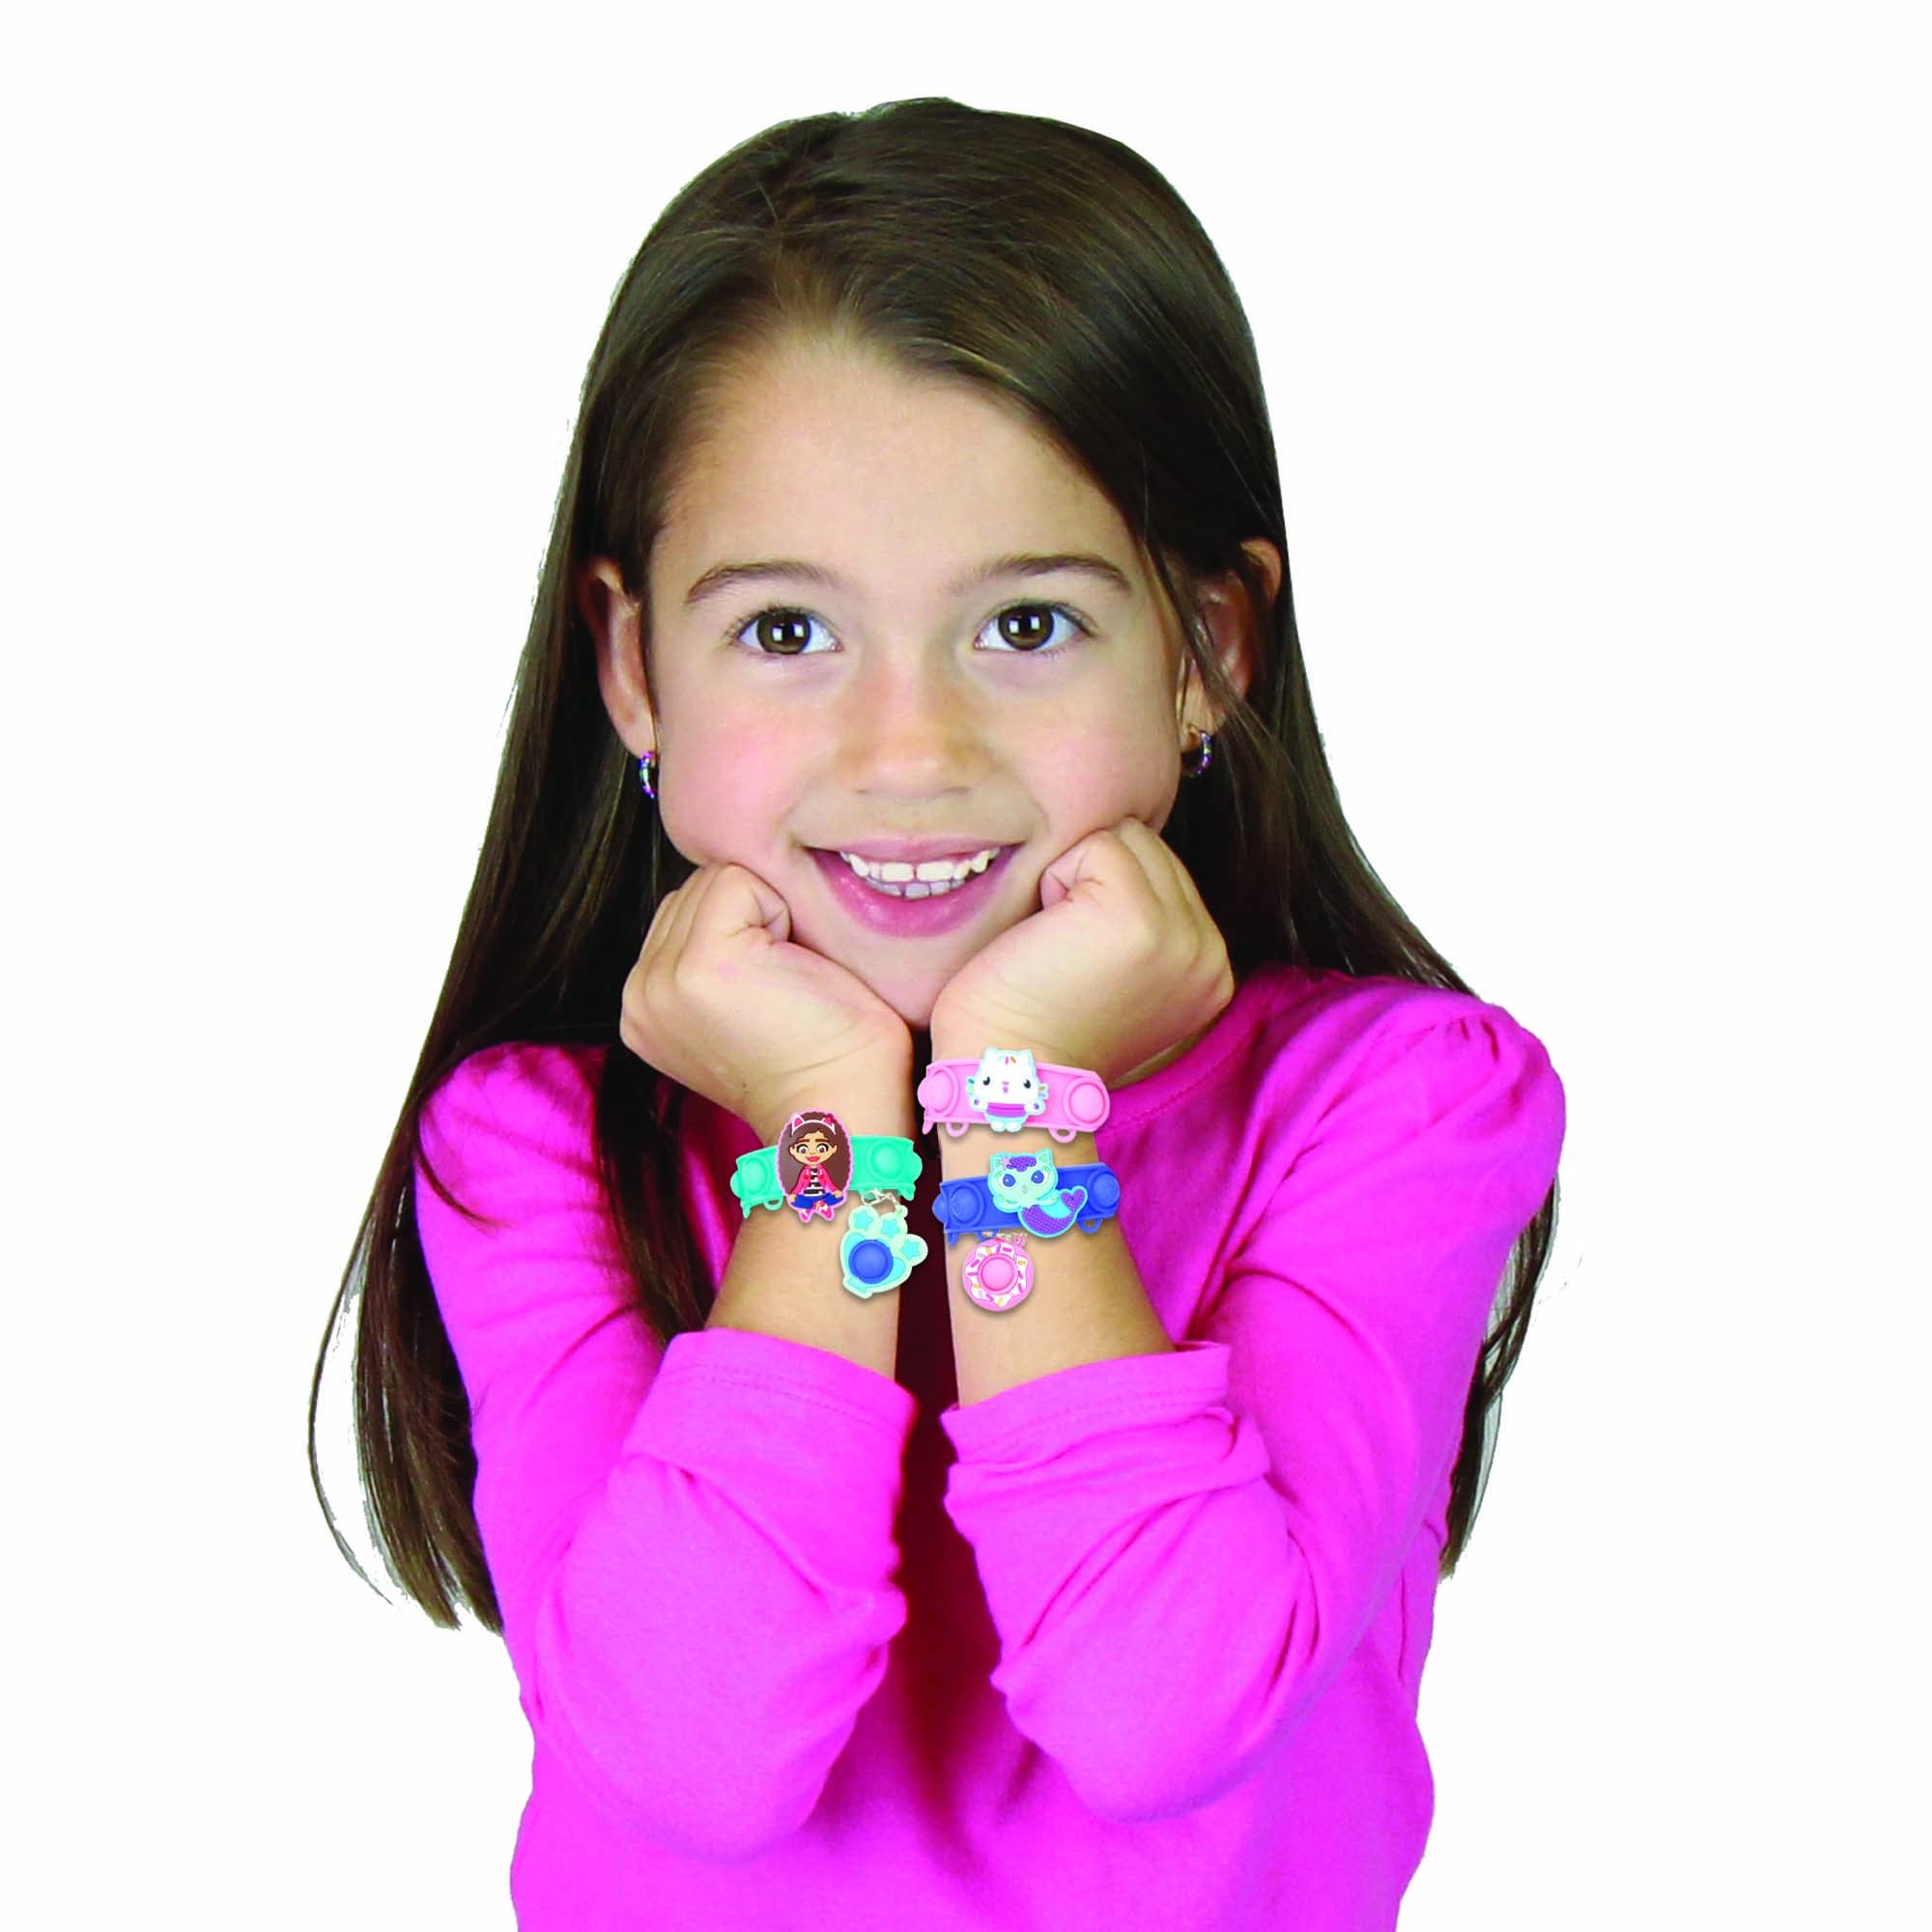 Tara Toys Pop-Eeze: Bracelet Activity Set - Gabby's Dollhouse - Jewelry Set, Popping Sensory Fun, Ages 3+